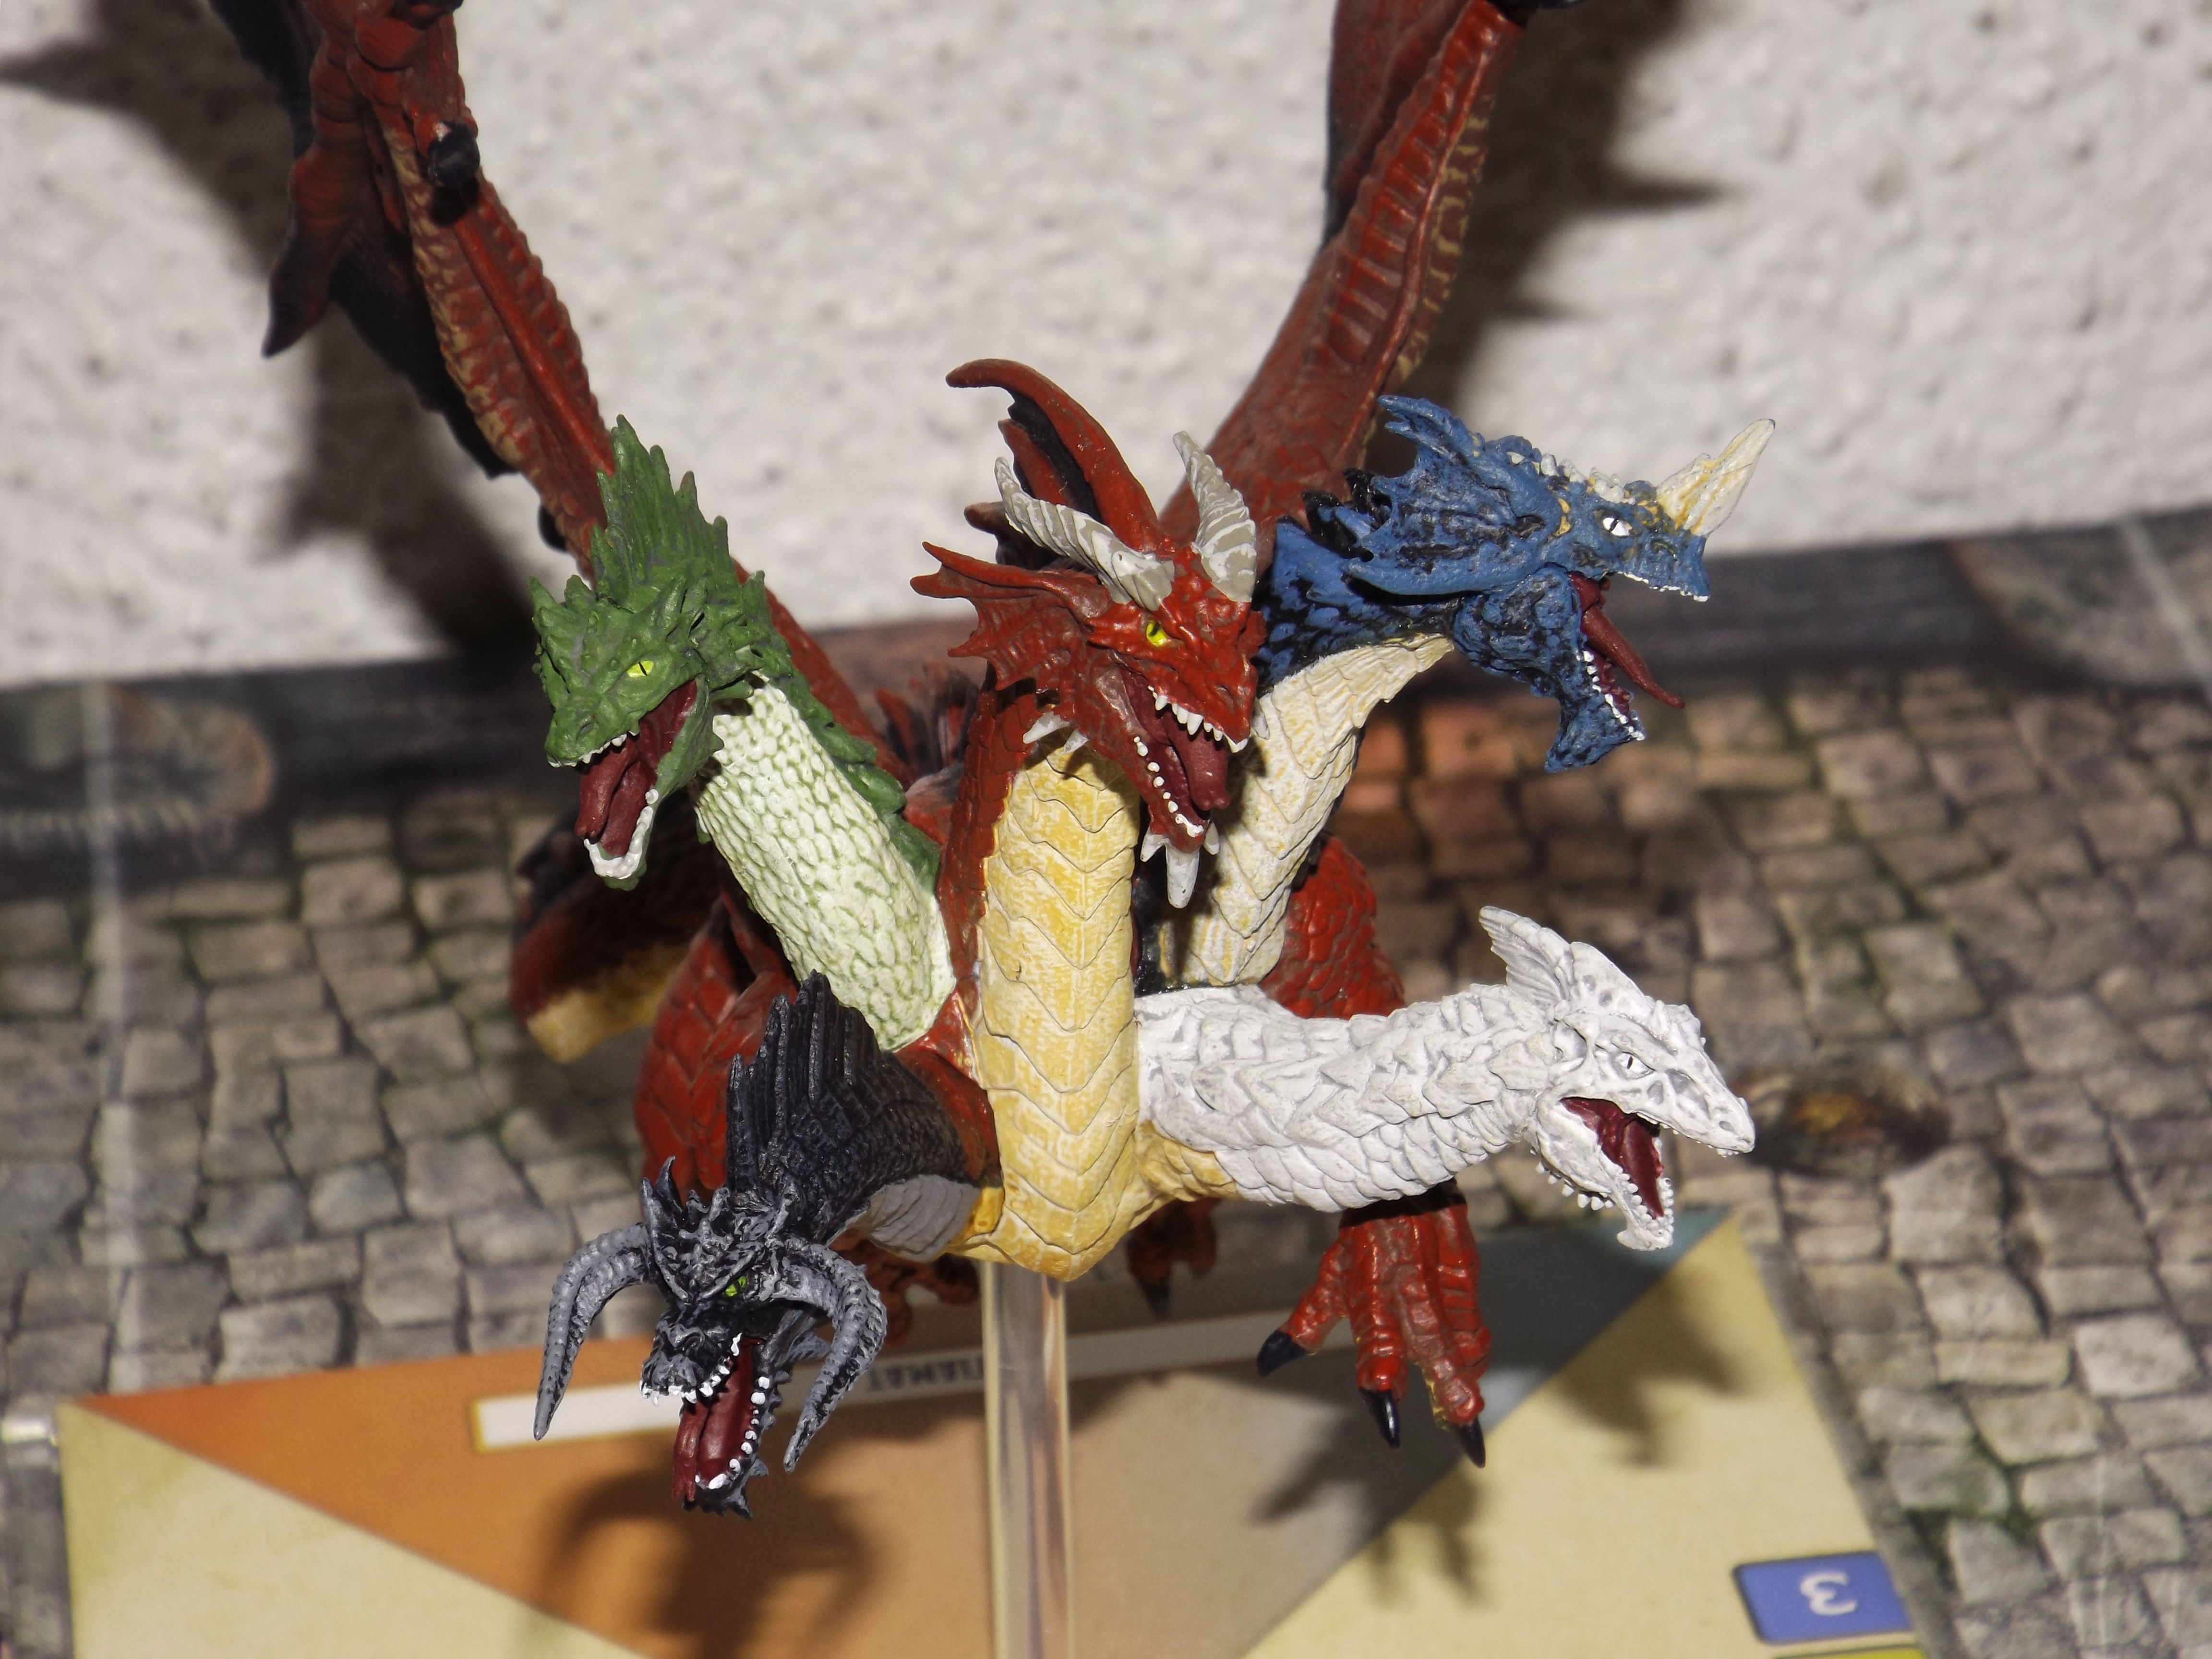 Dungeons & Dragons: Attack Wing – Tiamat Premium Figure